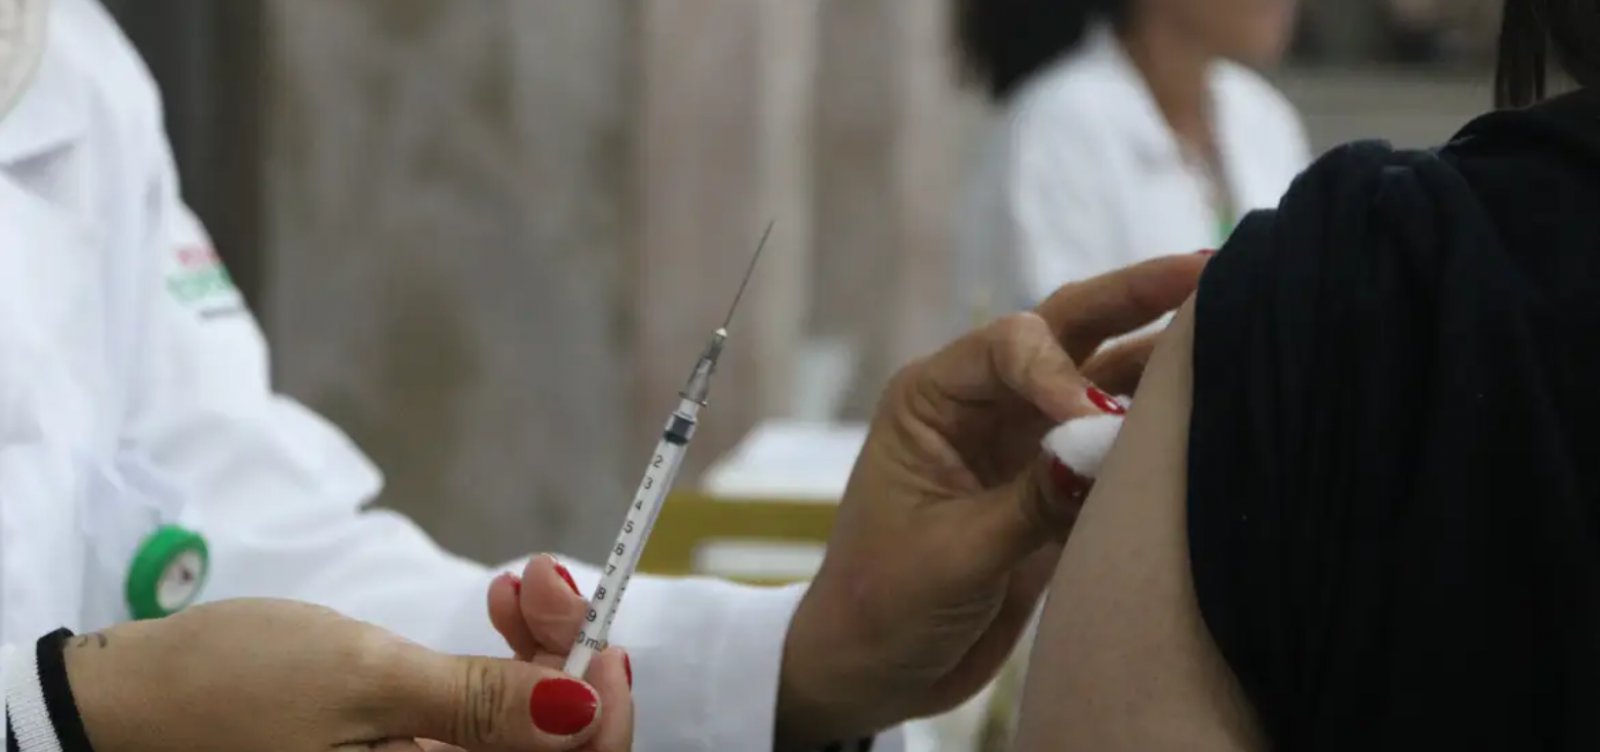 Bahia tem maior proporção de não imunizados contra Covid-19 na área rural, aponta IBGE